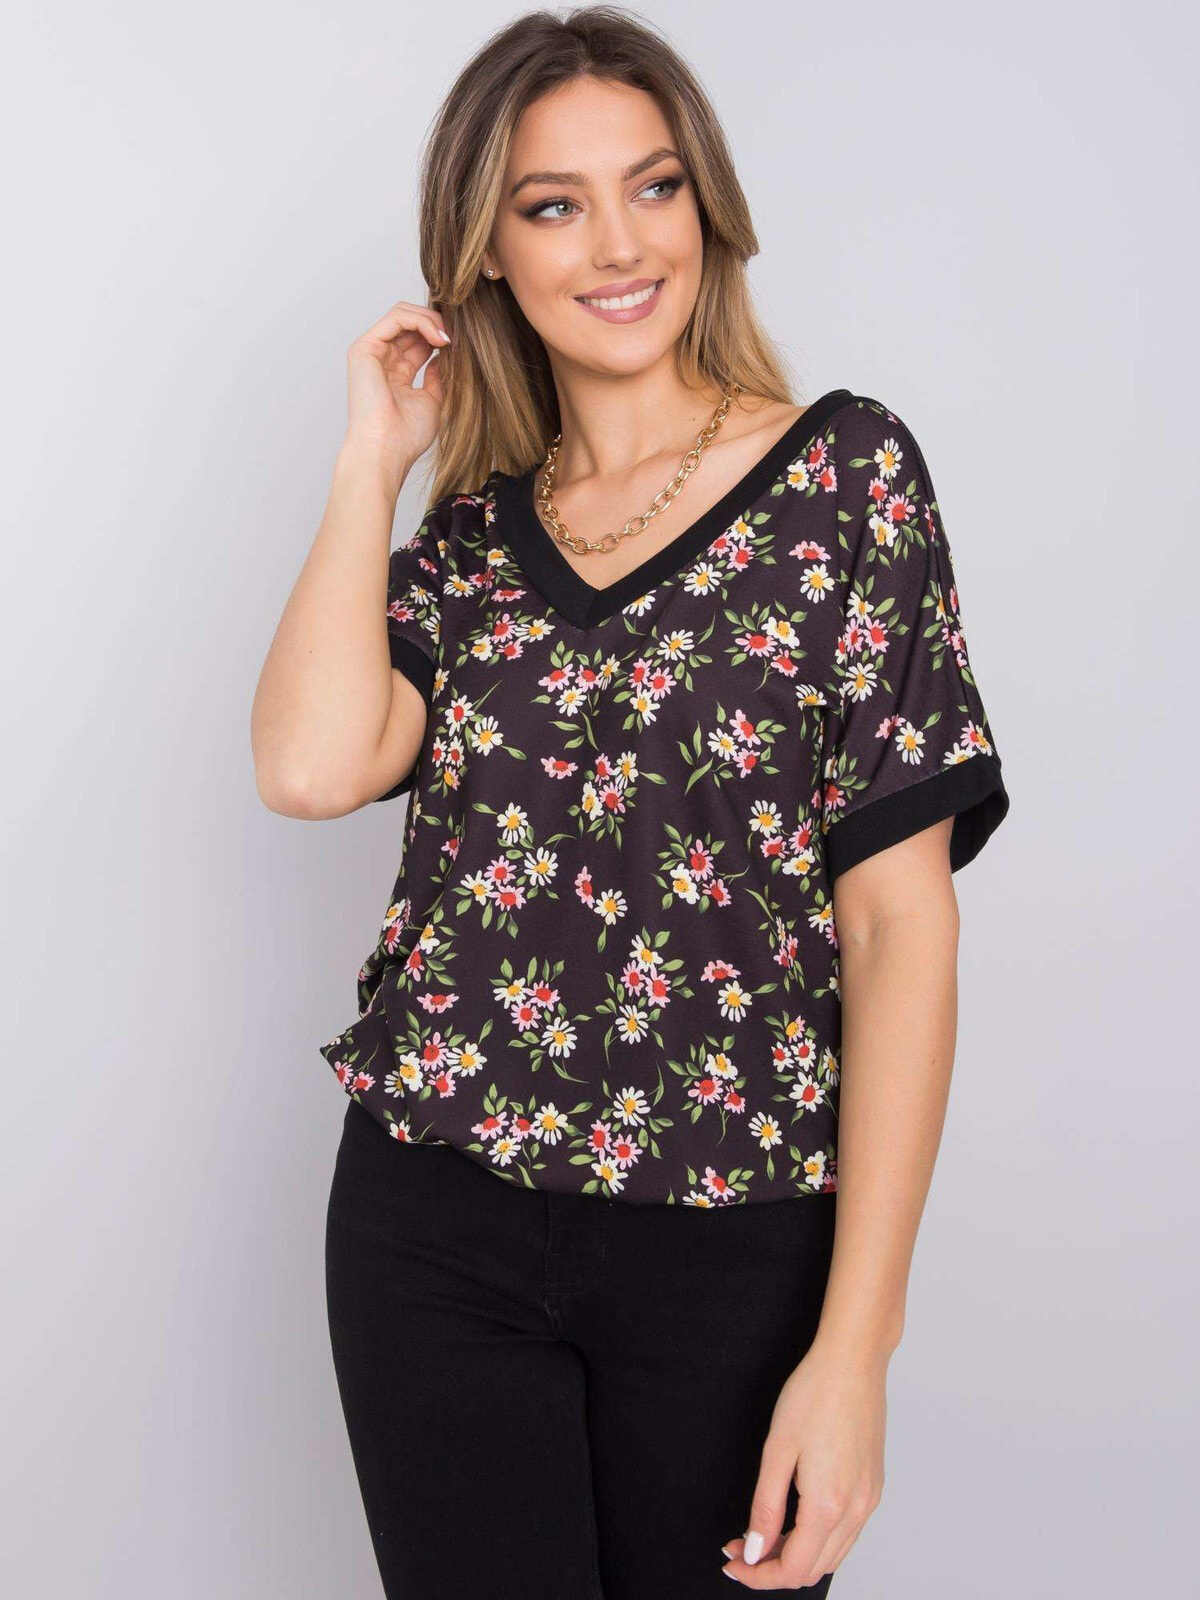 Женская блузка с короткими рукавами Factory Price